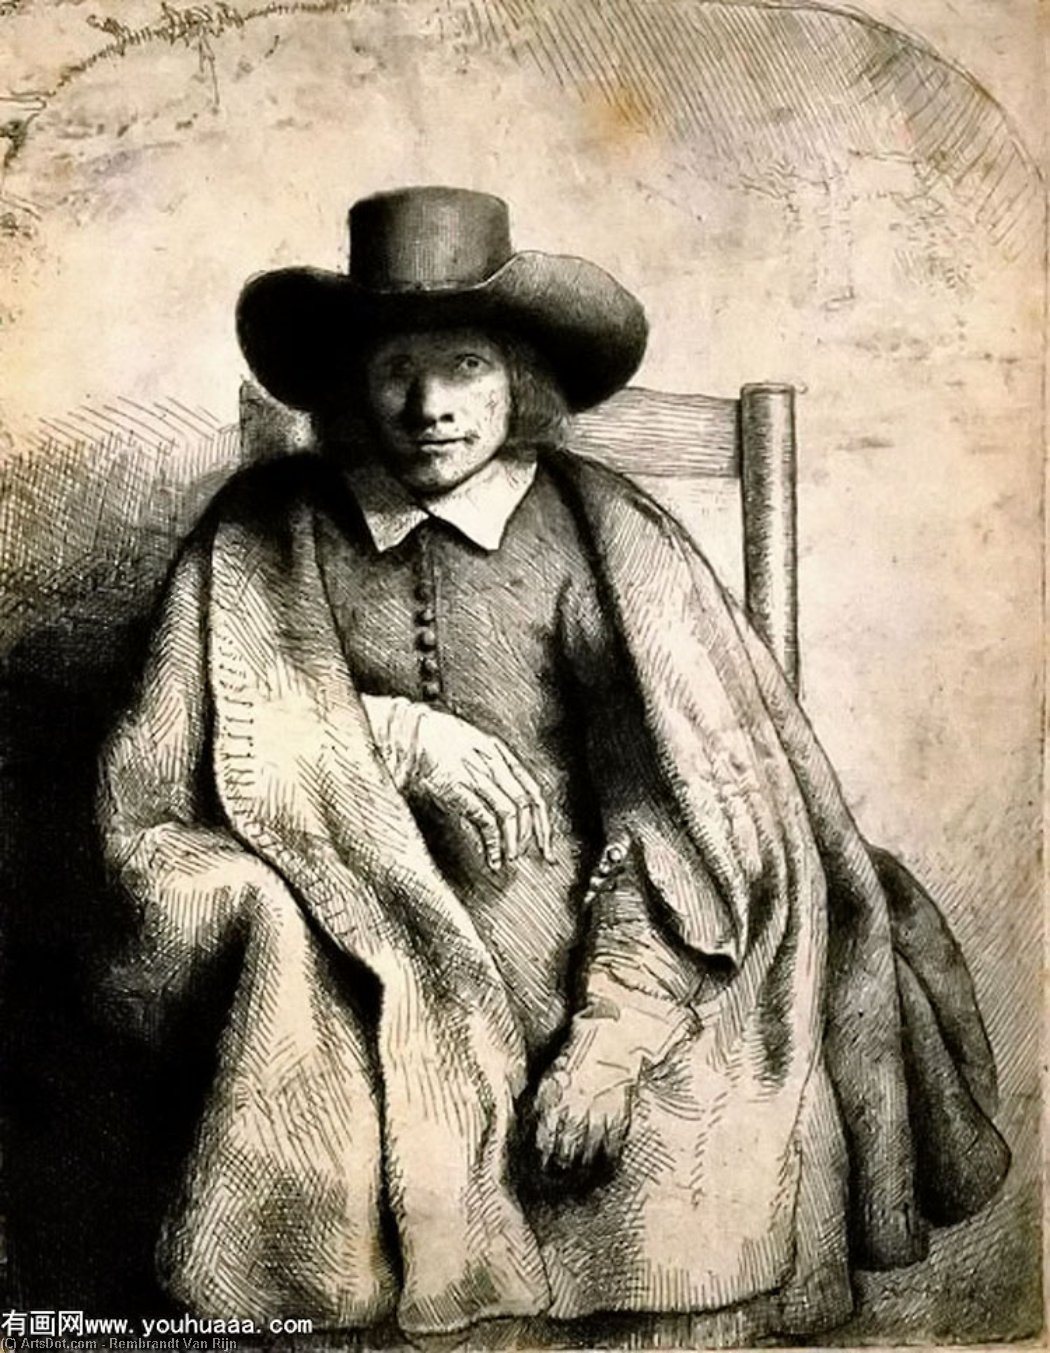 WikiOO.org - Encyclopedia of Fine Arts - Maľba, Artwork Rembrandt Van Rijn - Clement de Jonghe Printseller